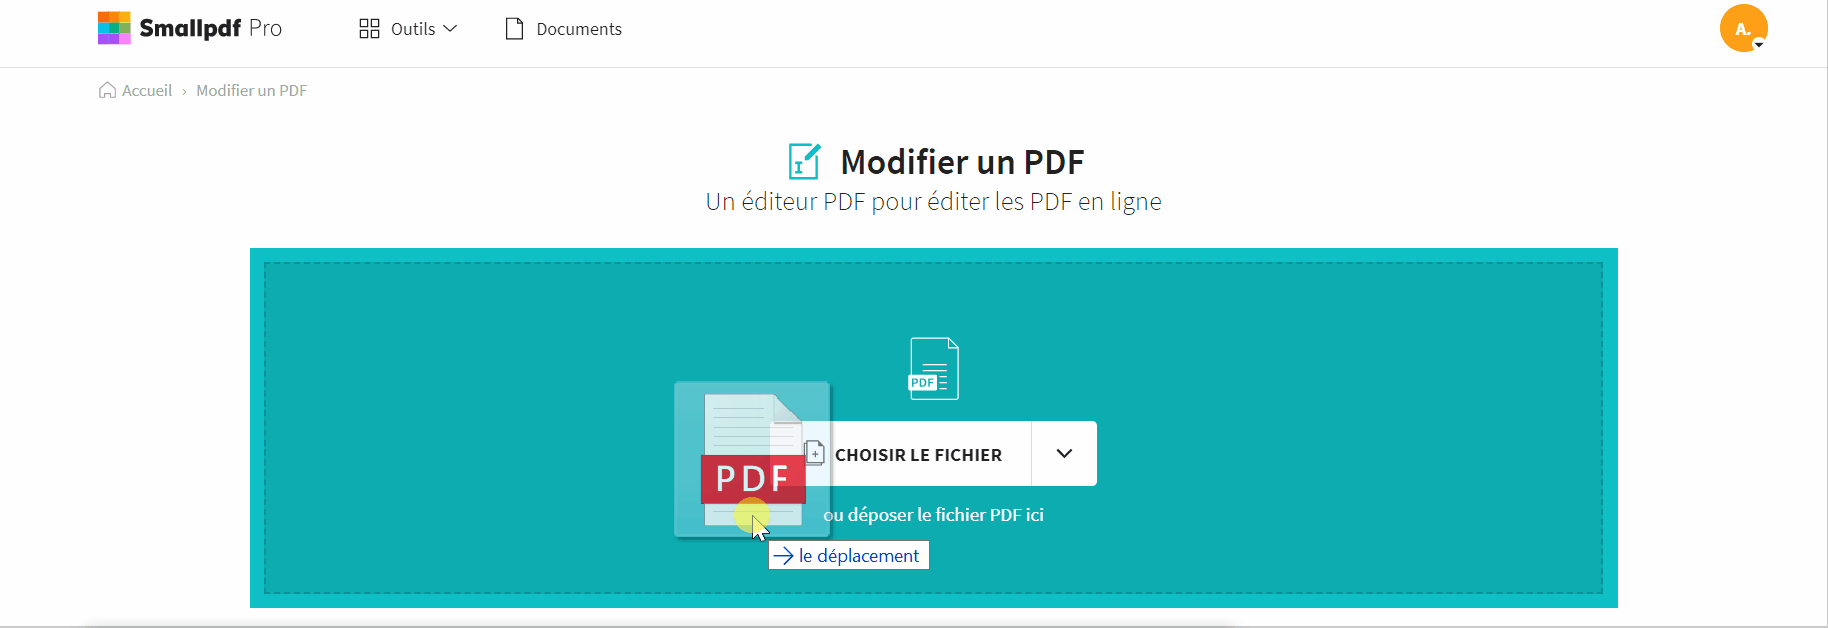 2021-11-17 - Comment masquer du contenu dans un PDF - outil Modifier PDF sur Smallpdf